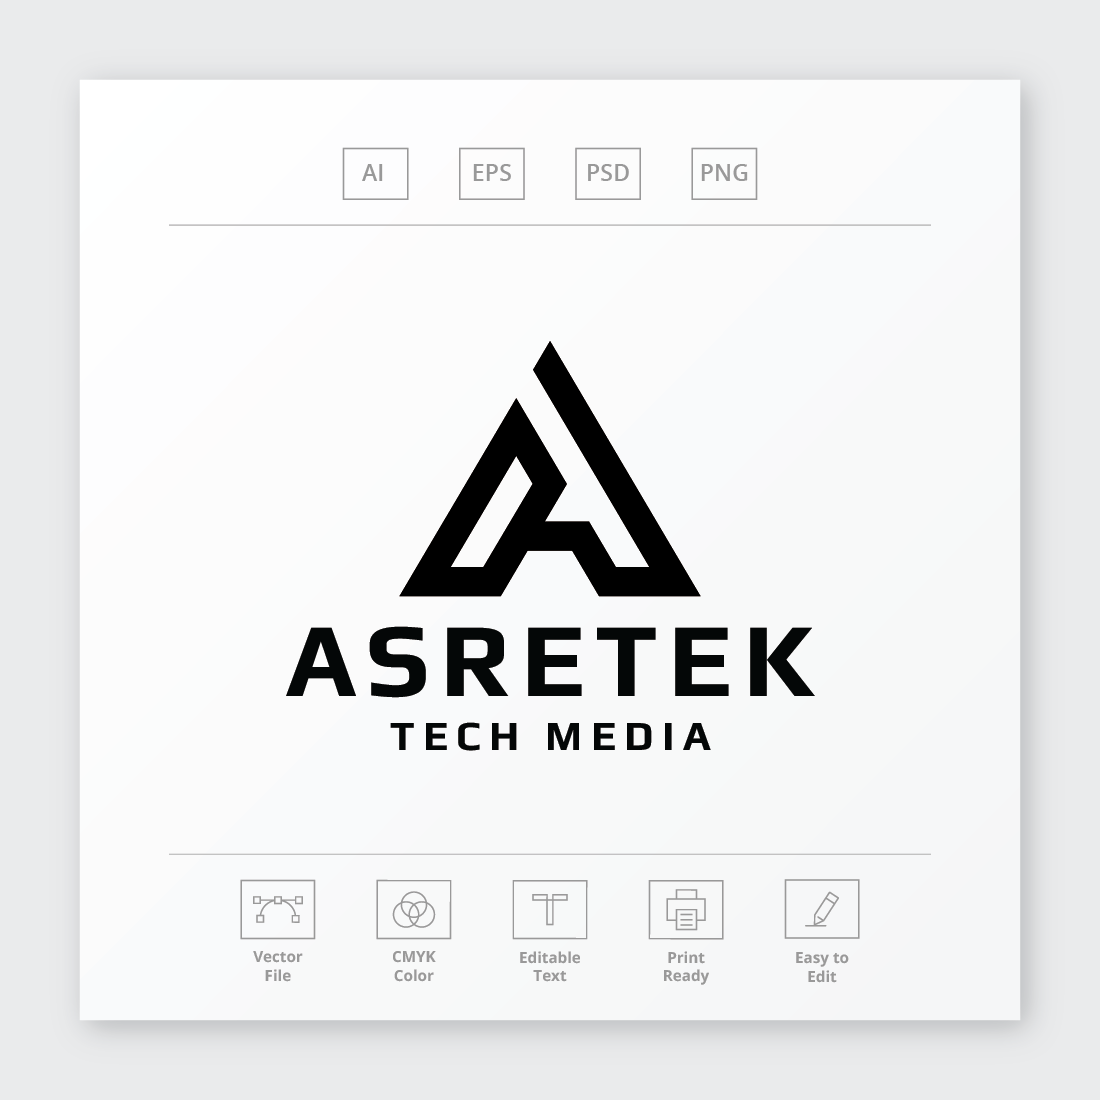 Asretek Letter A Logo preview image.